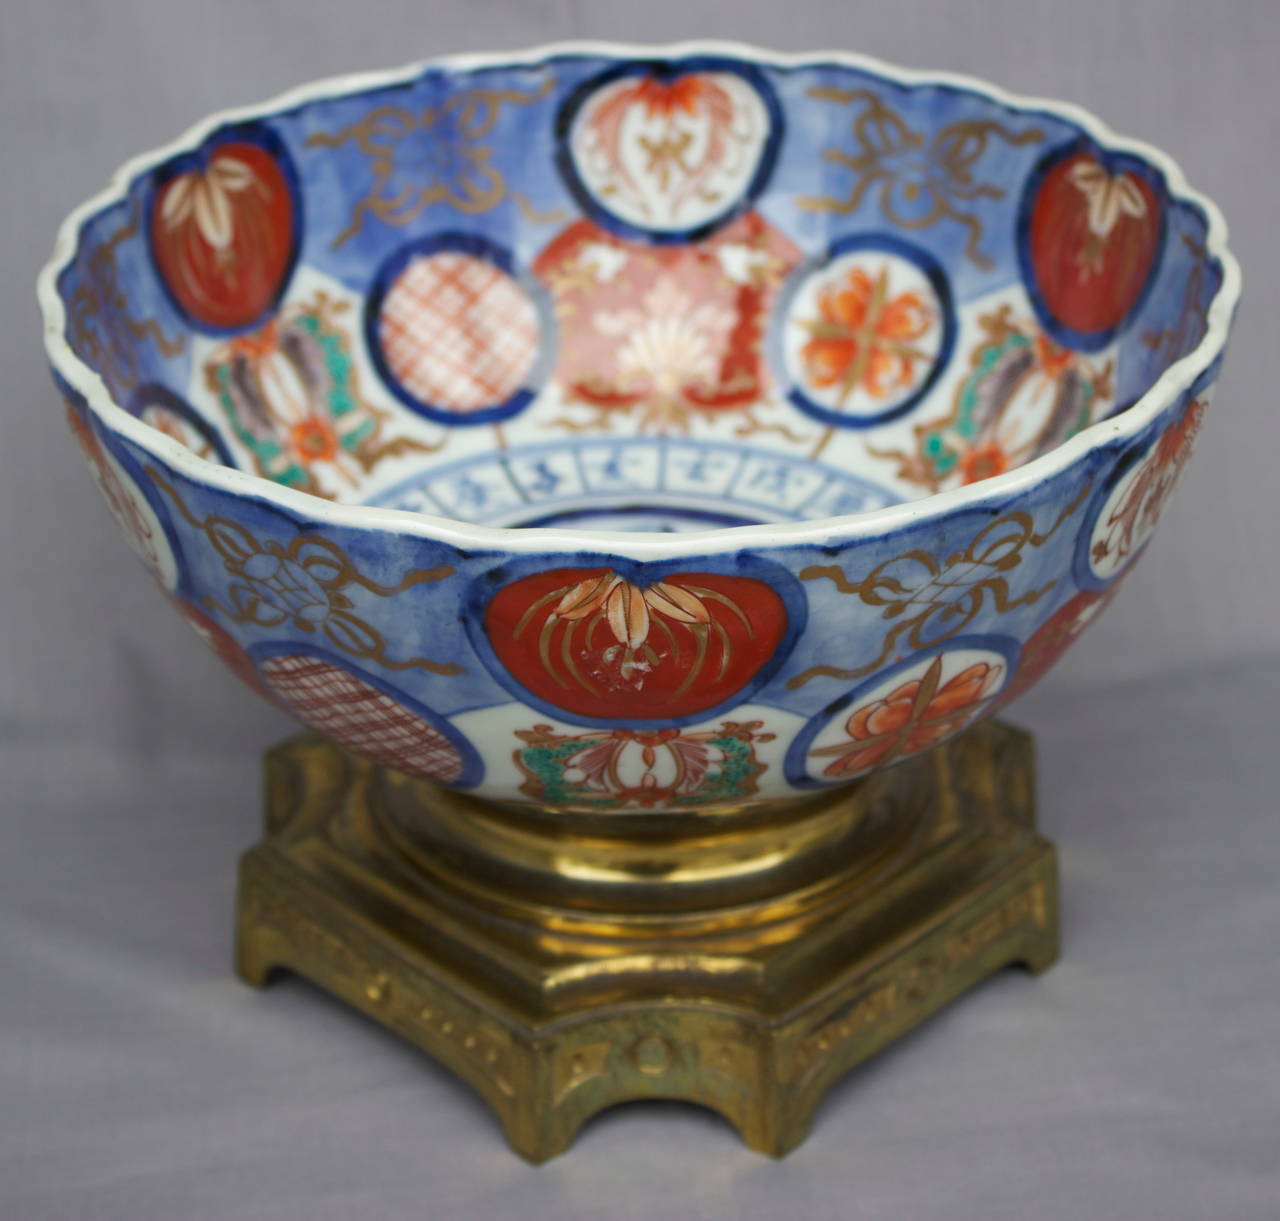 Napoleon III Imari Porcelain Bowl on a Gilded Bronze Base